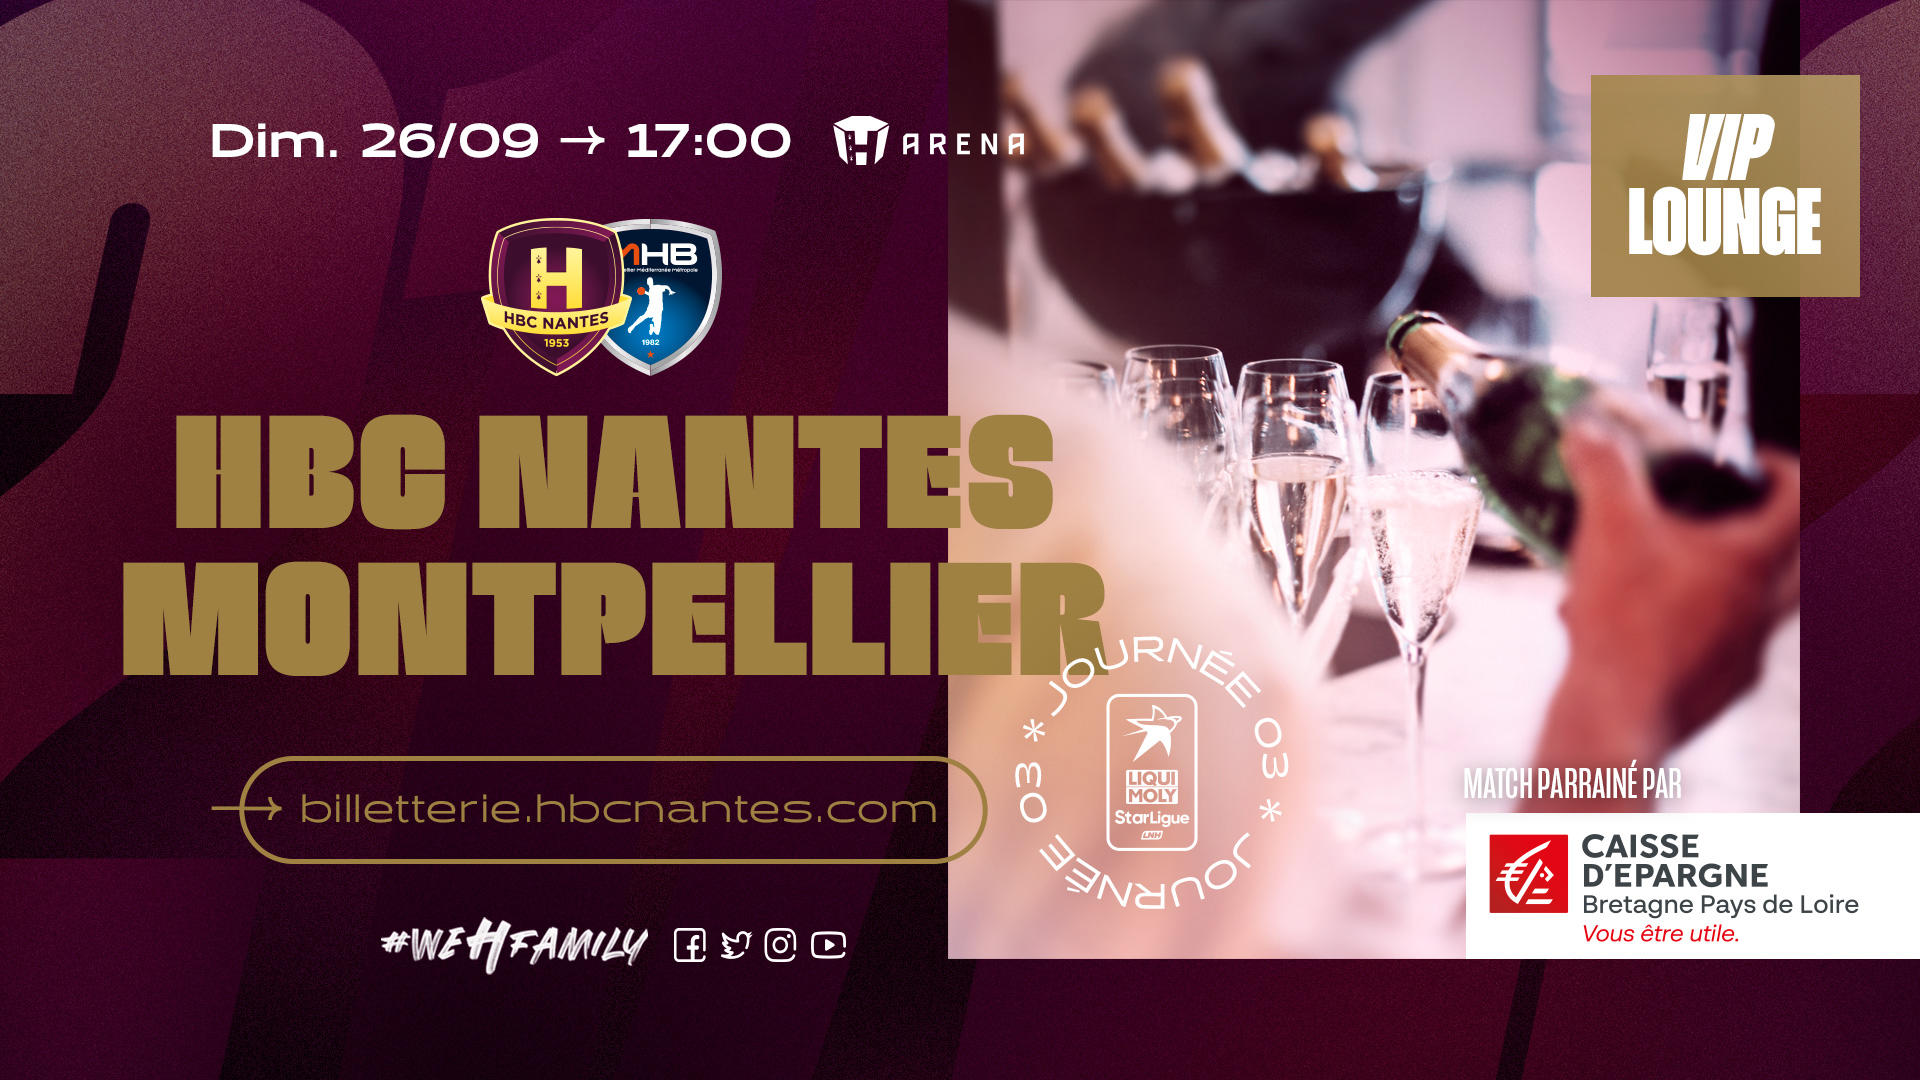 Offre découverte "VIP Lounge" pour le choc HBC Nantes - Montpellier